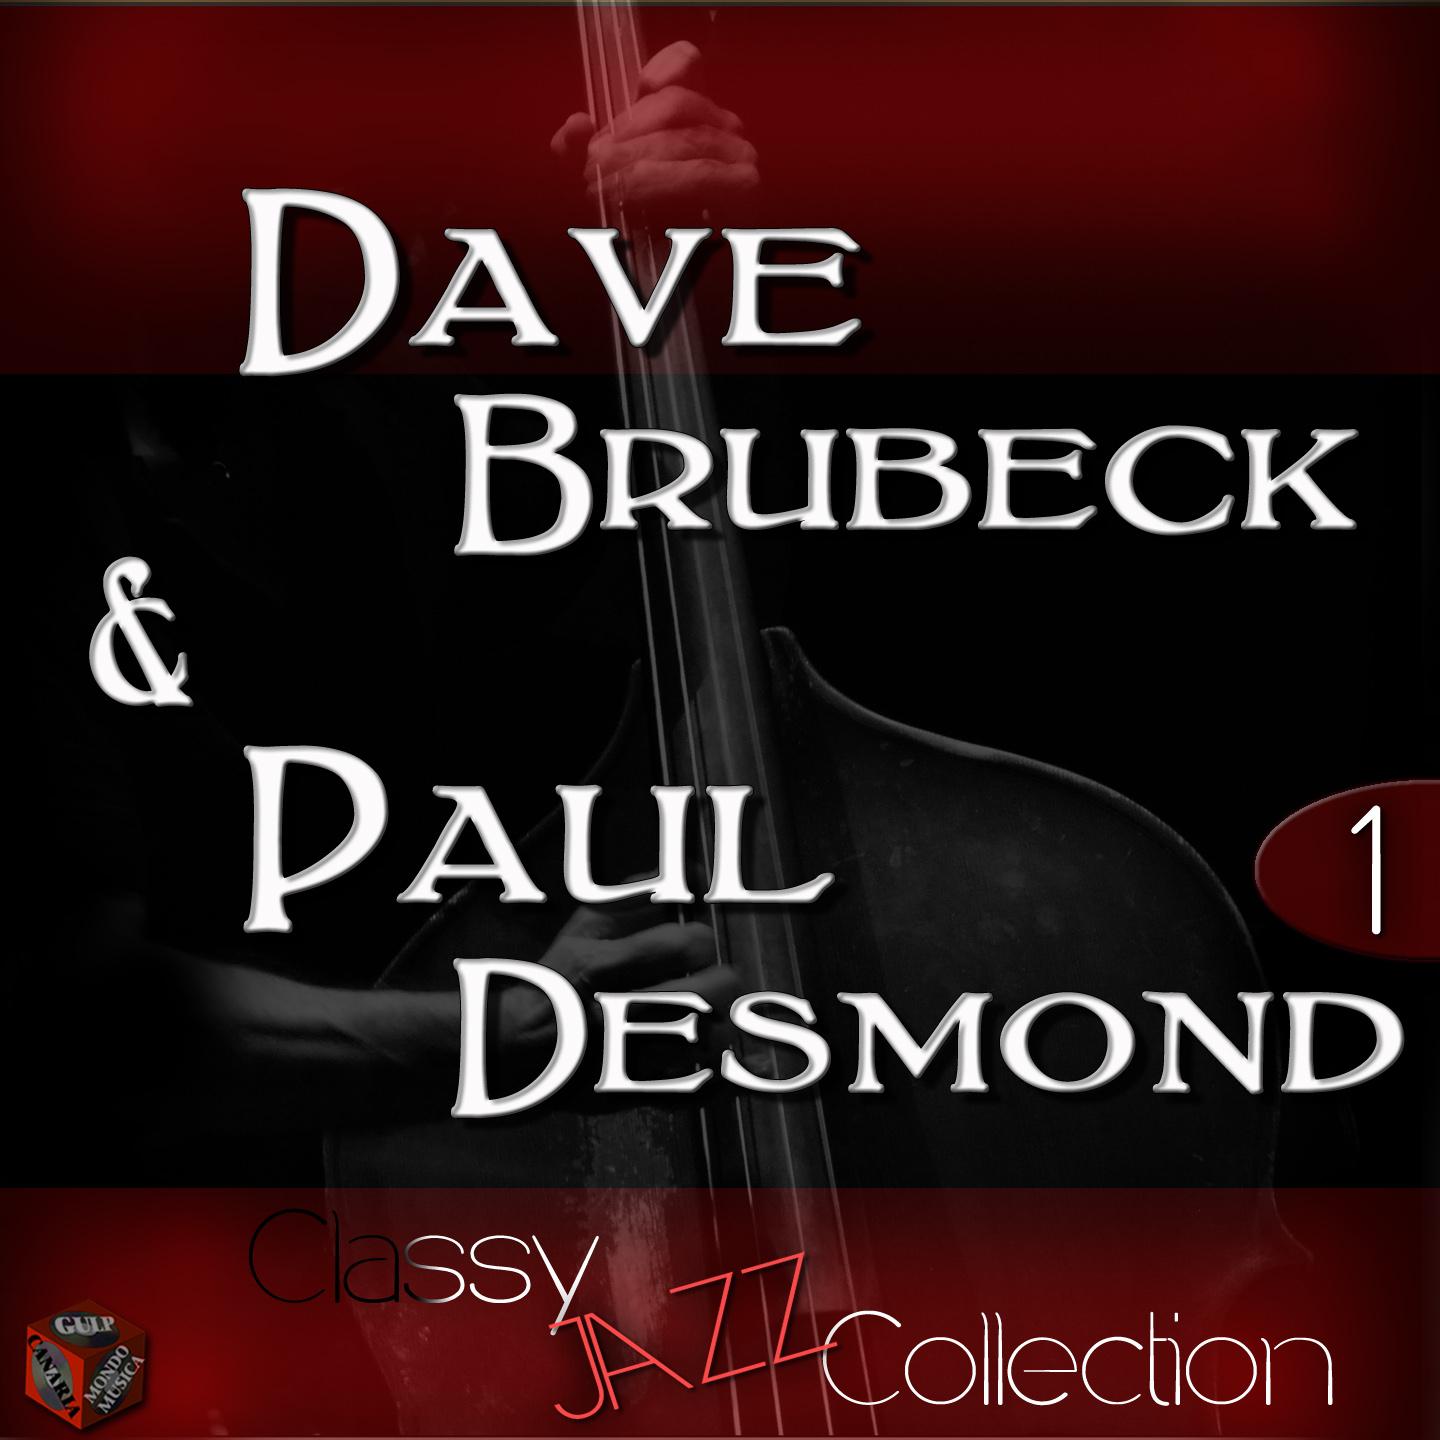 Jazz Collection: Dave Brubeck & Paul Desmond, Vol. 1